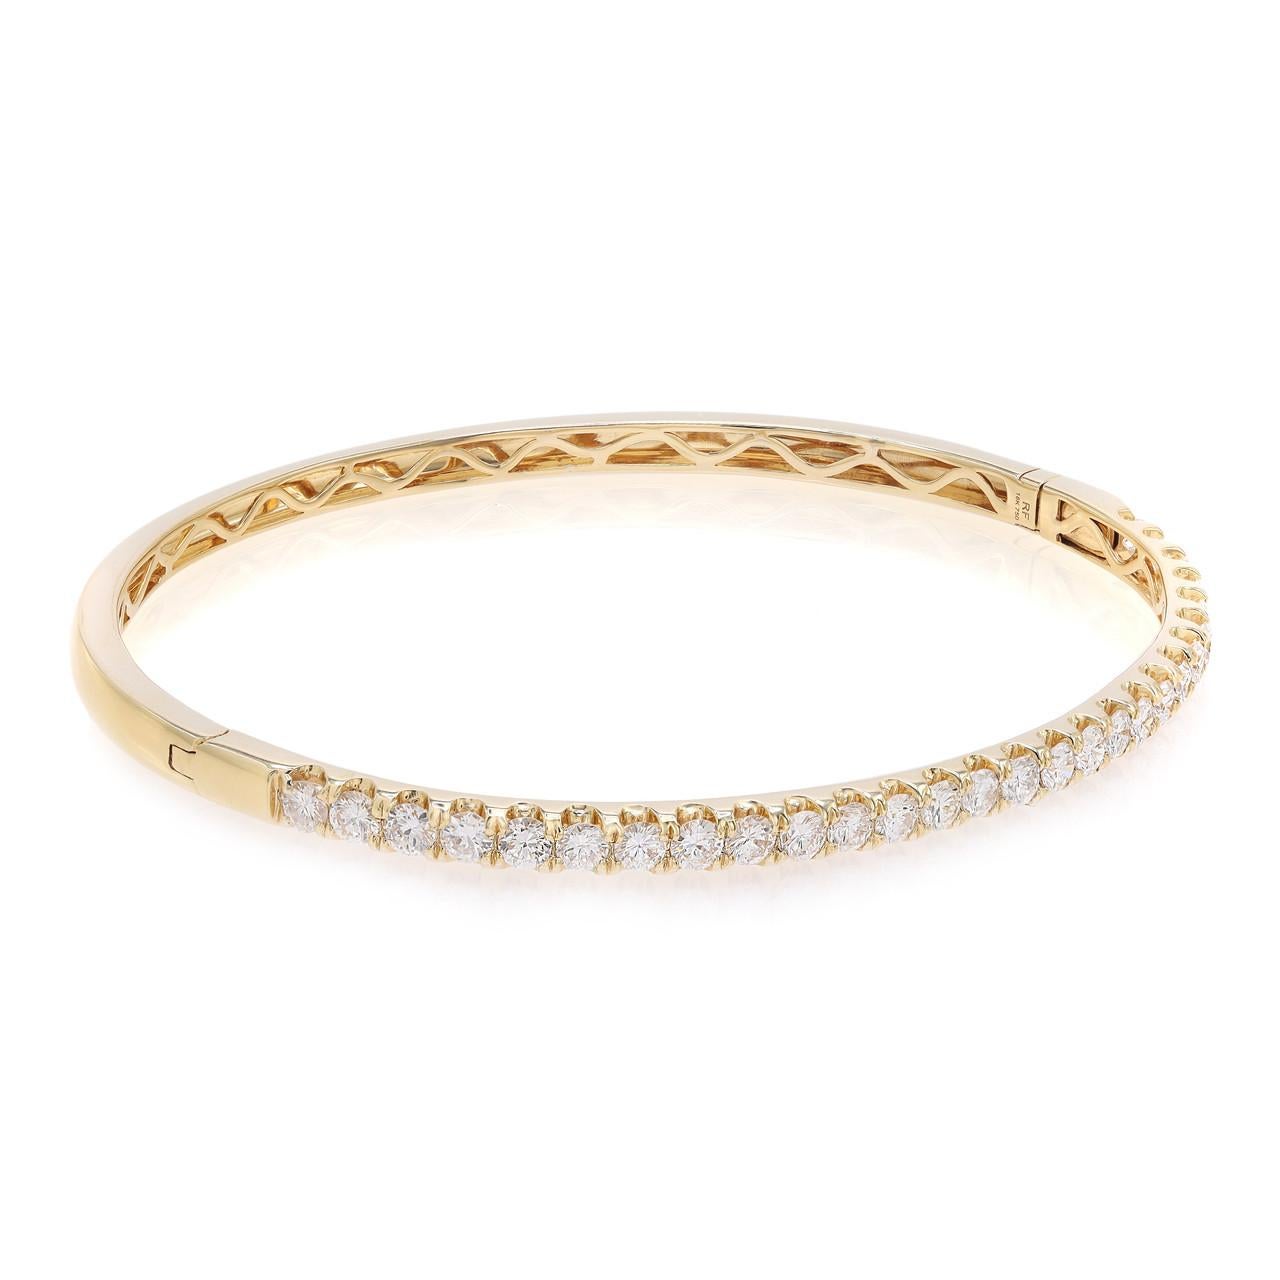 Voici le polyvalent et élégant bracelet en diamant, un mélange parfait de modernité et de sophistication. Cette pièce chic présente plus de deux carats de diamants ronds brillants, méticuleusement pavés en or jaune 18k. L'or jaune lustré complète